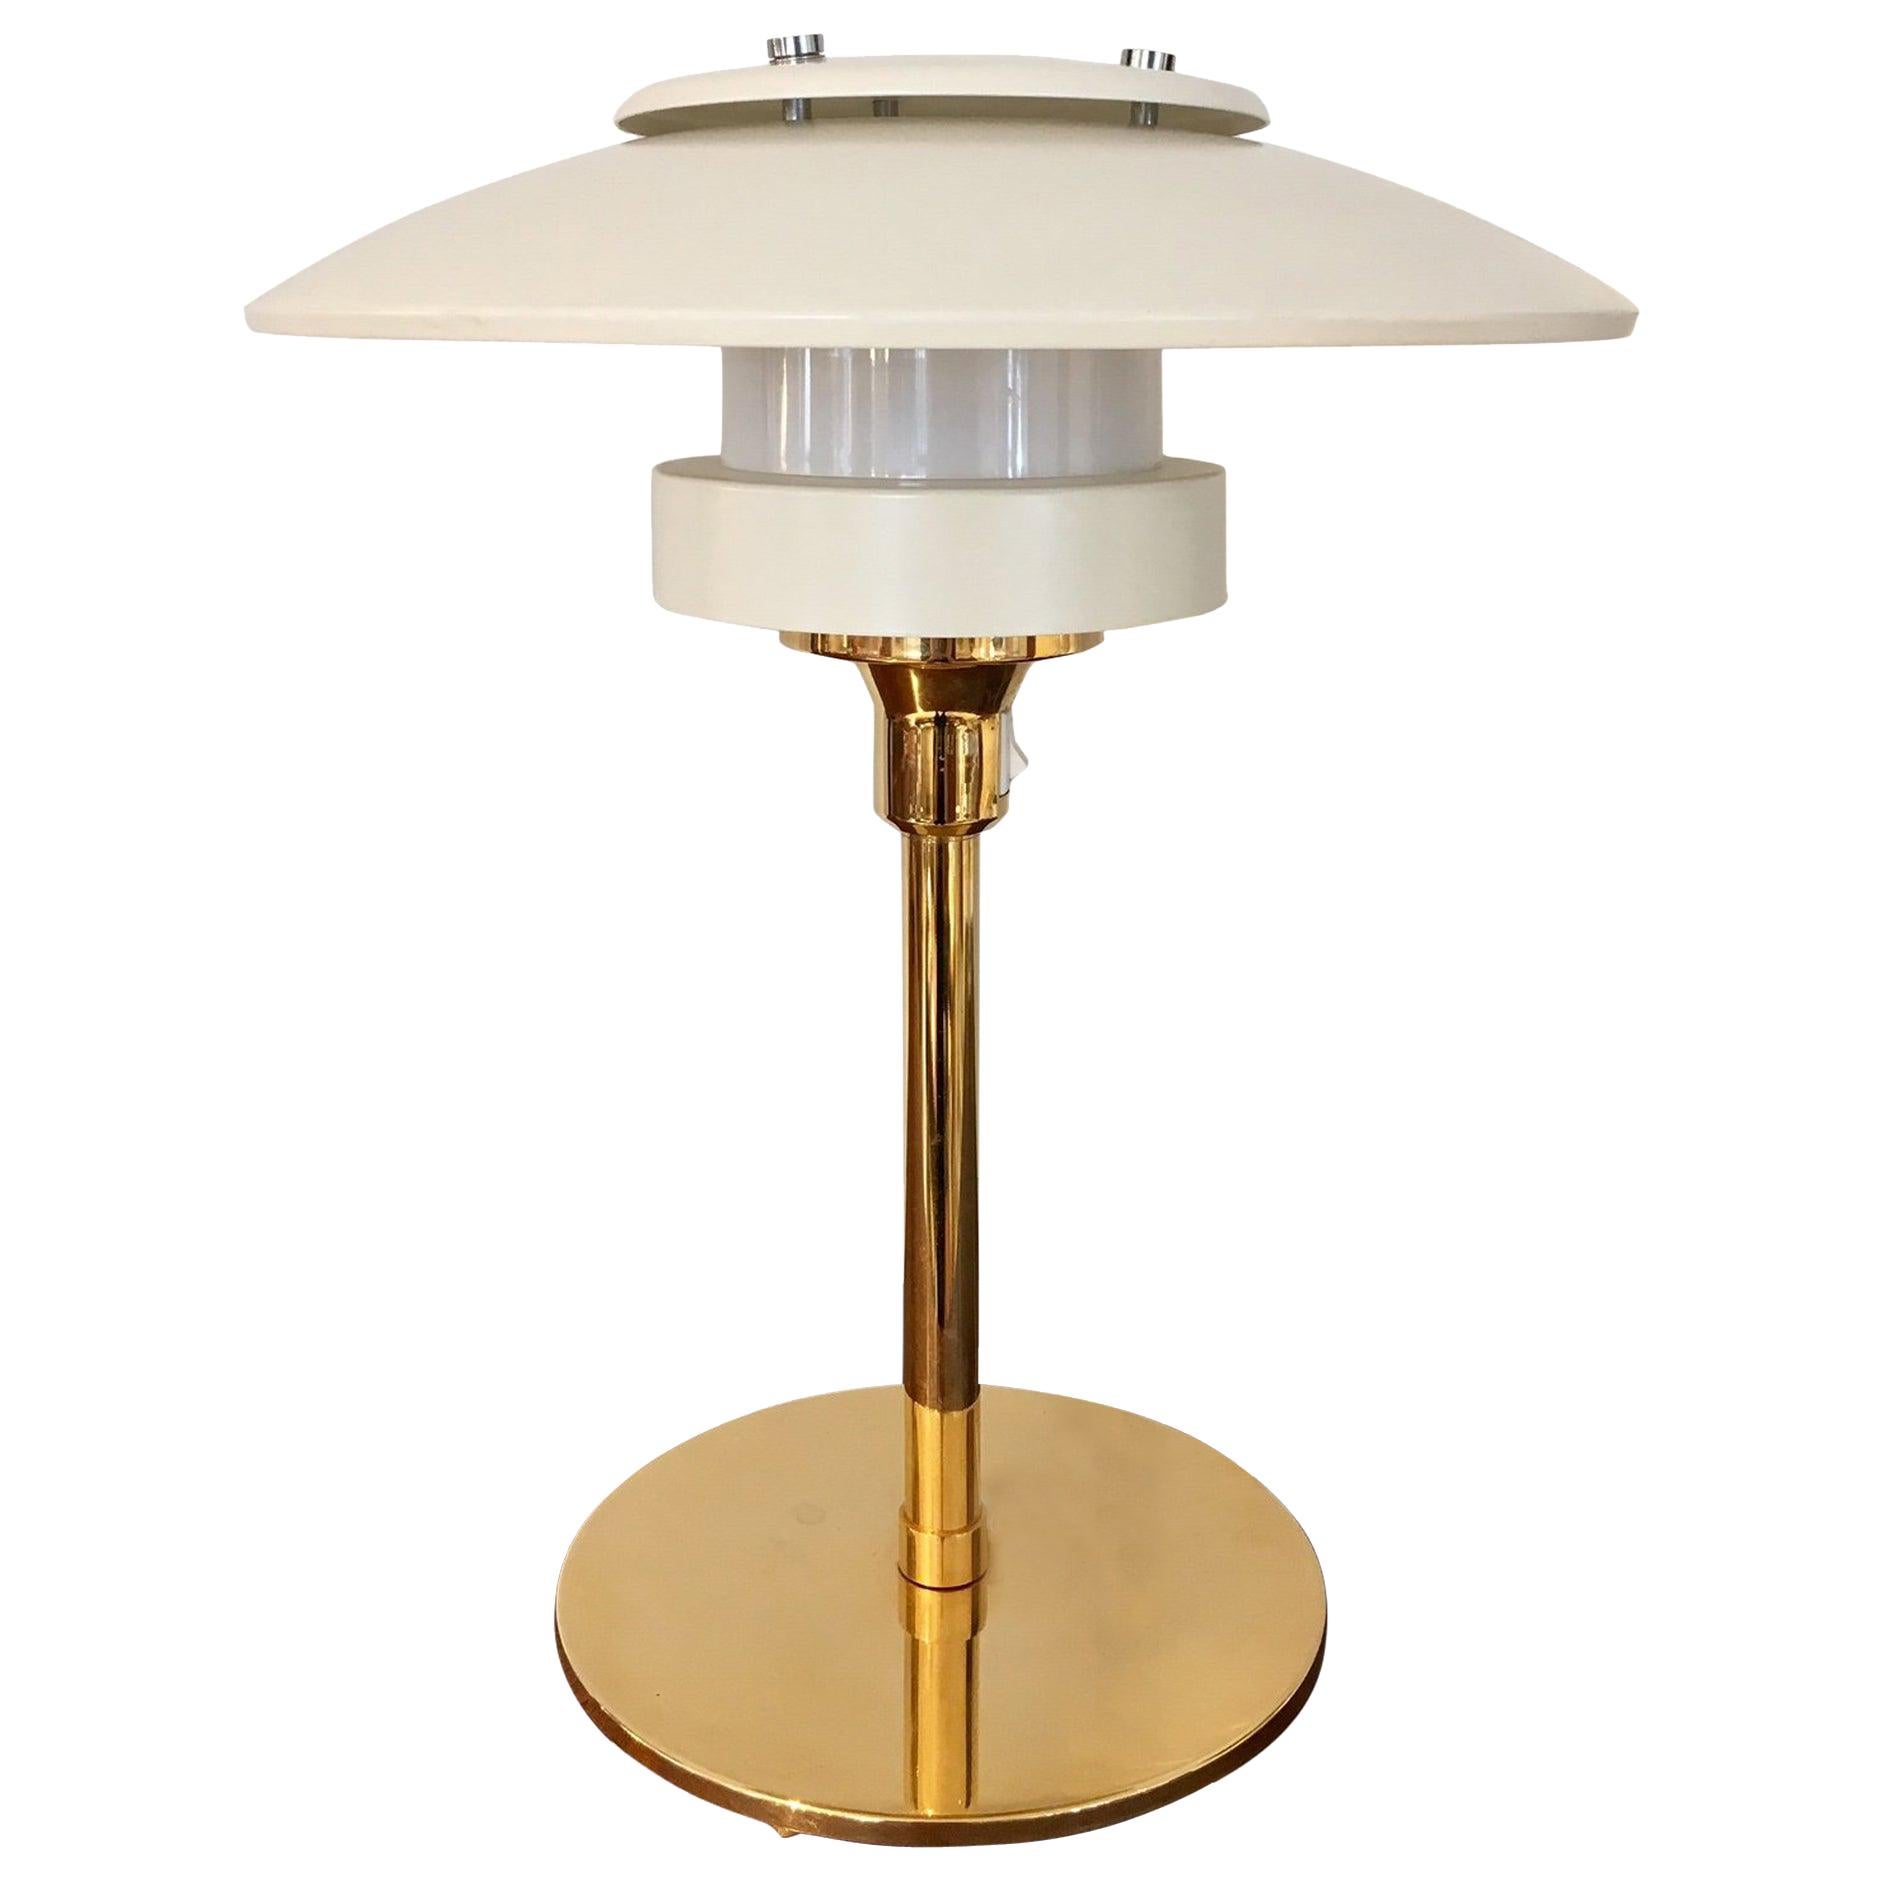 Light Studio by Horn White Table Lamp, Model 2686